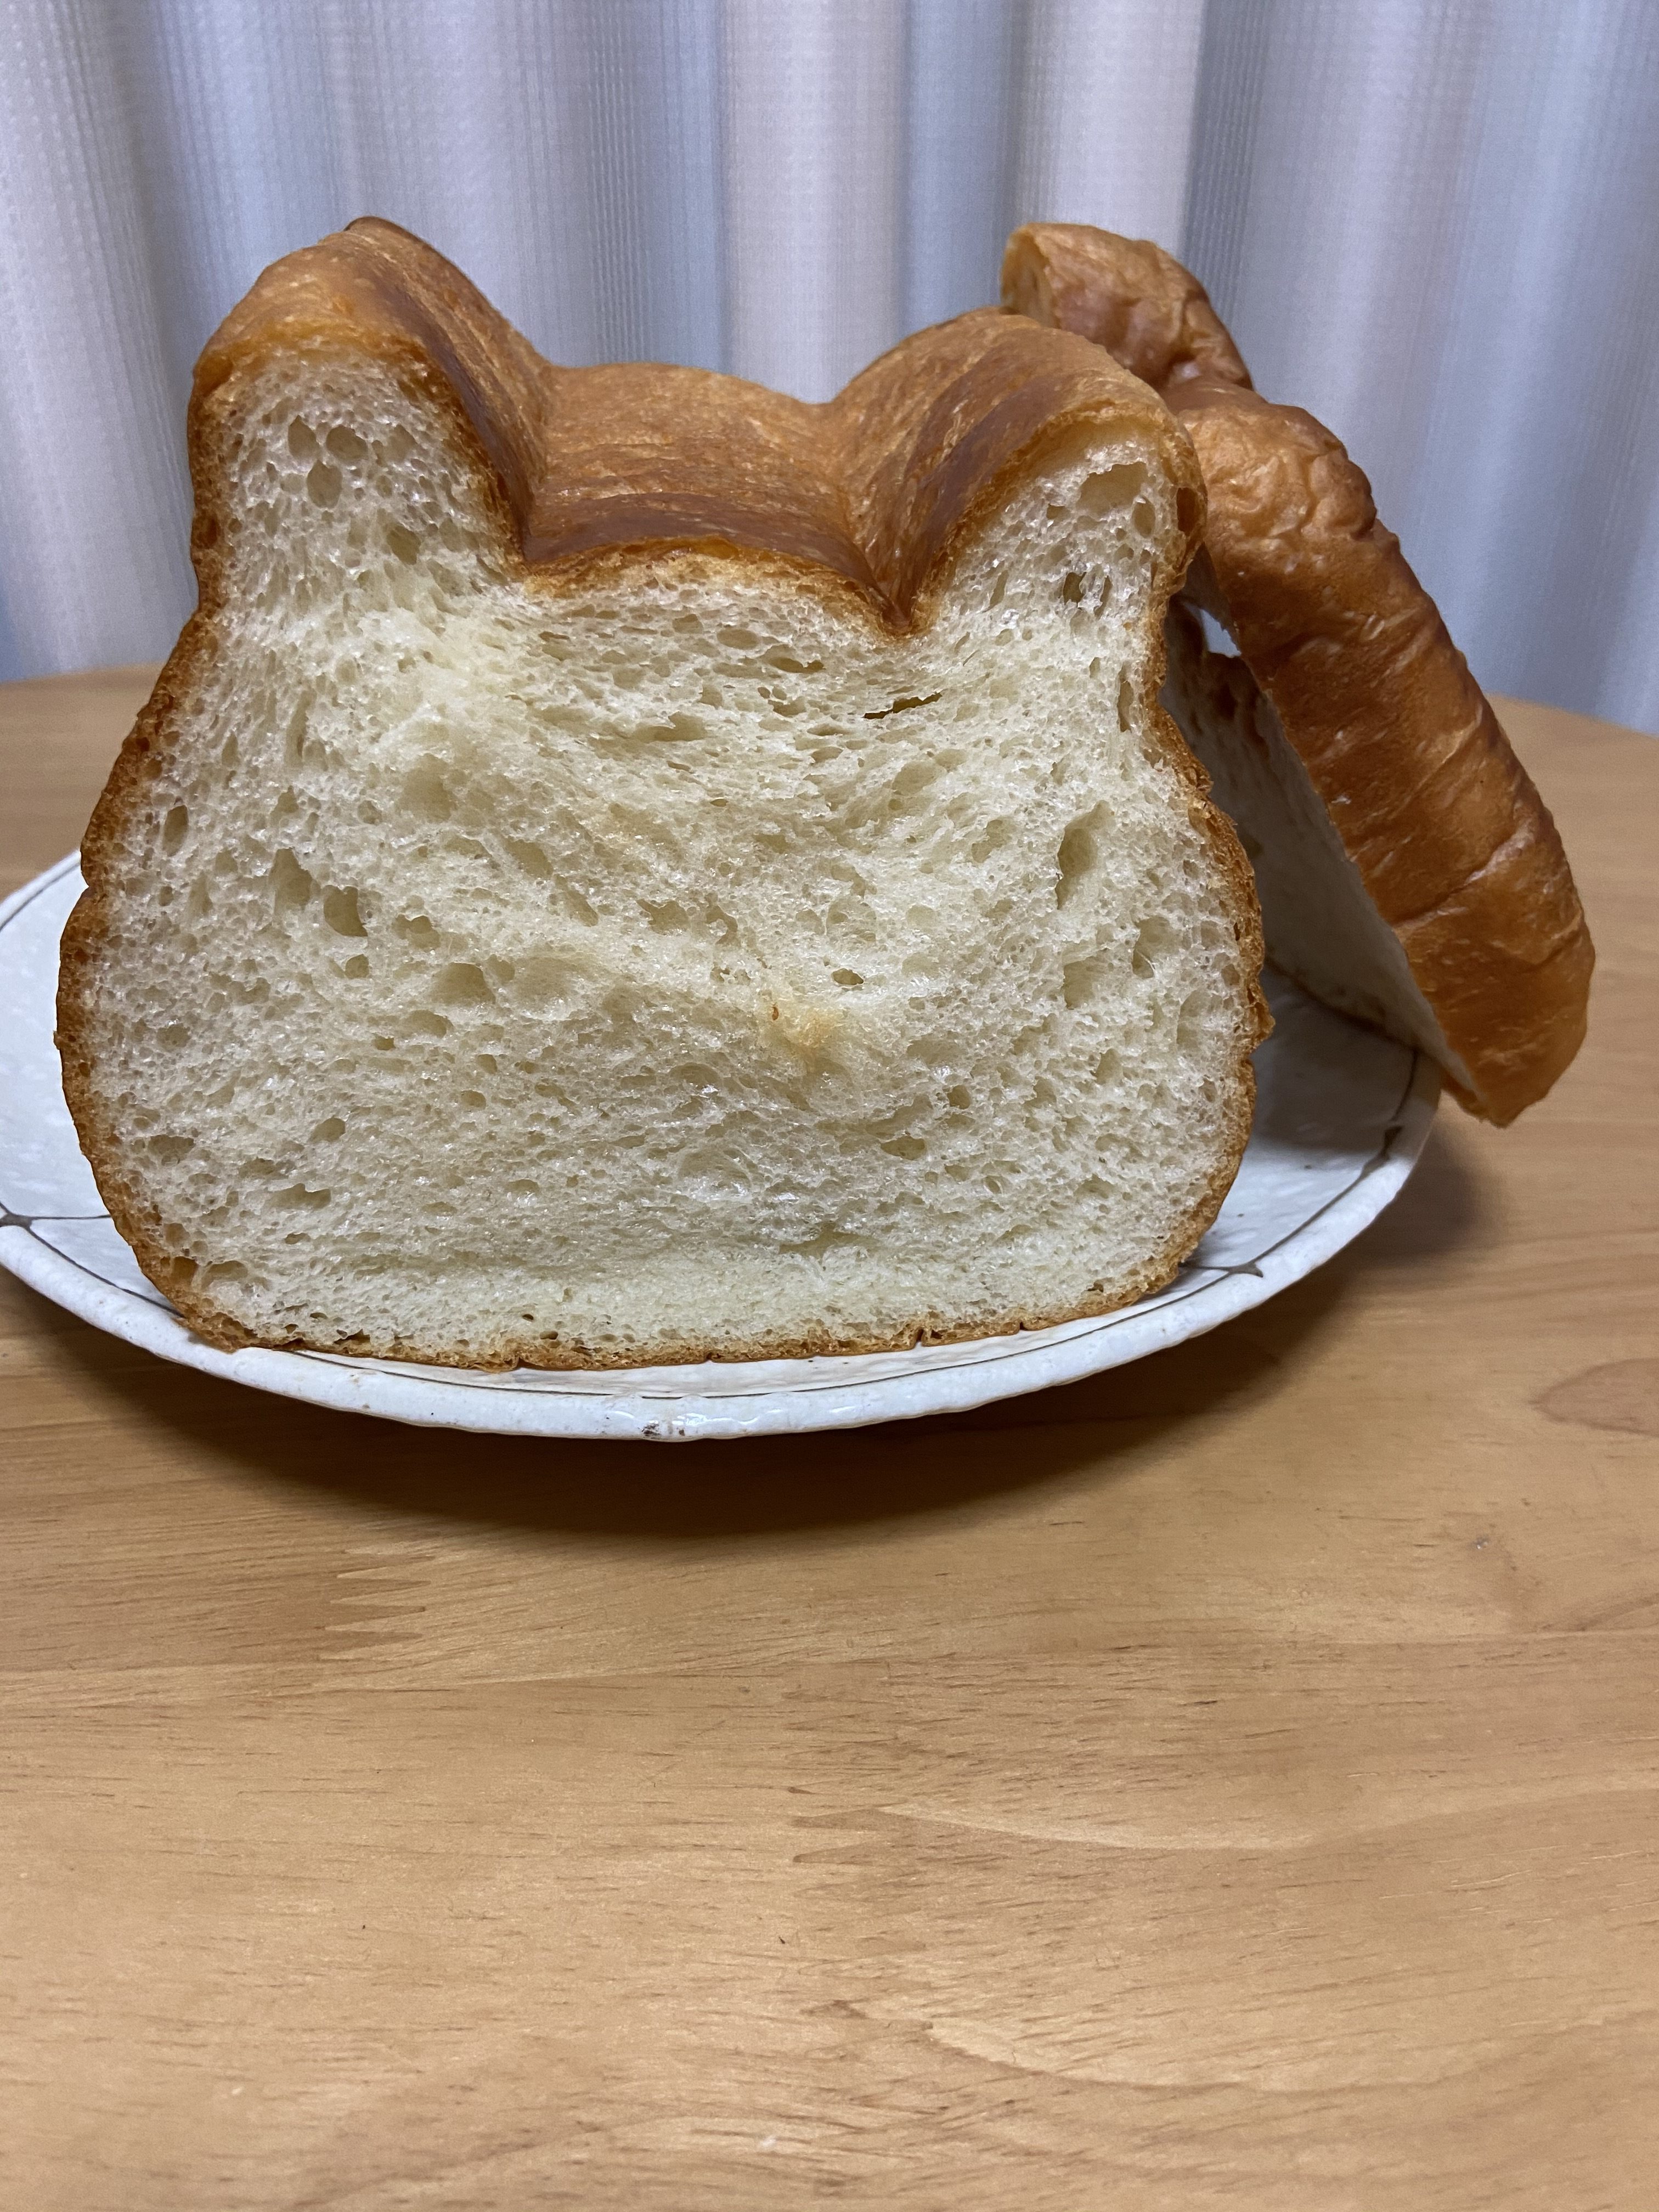 ねこねこ食パン